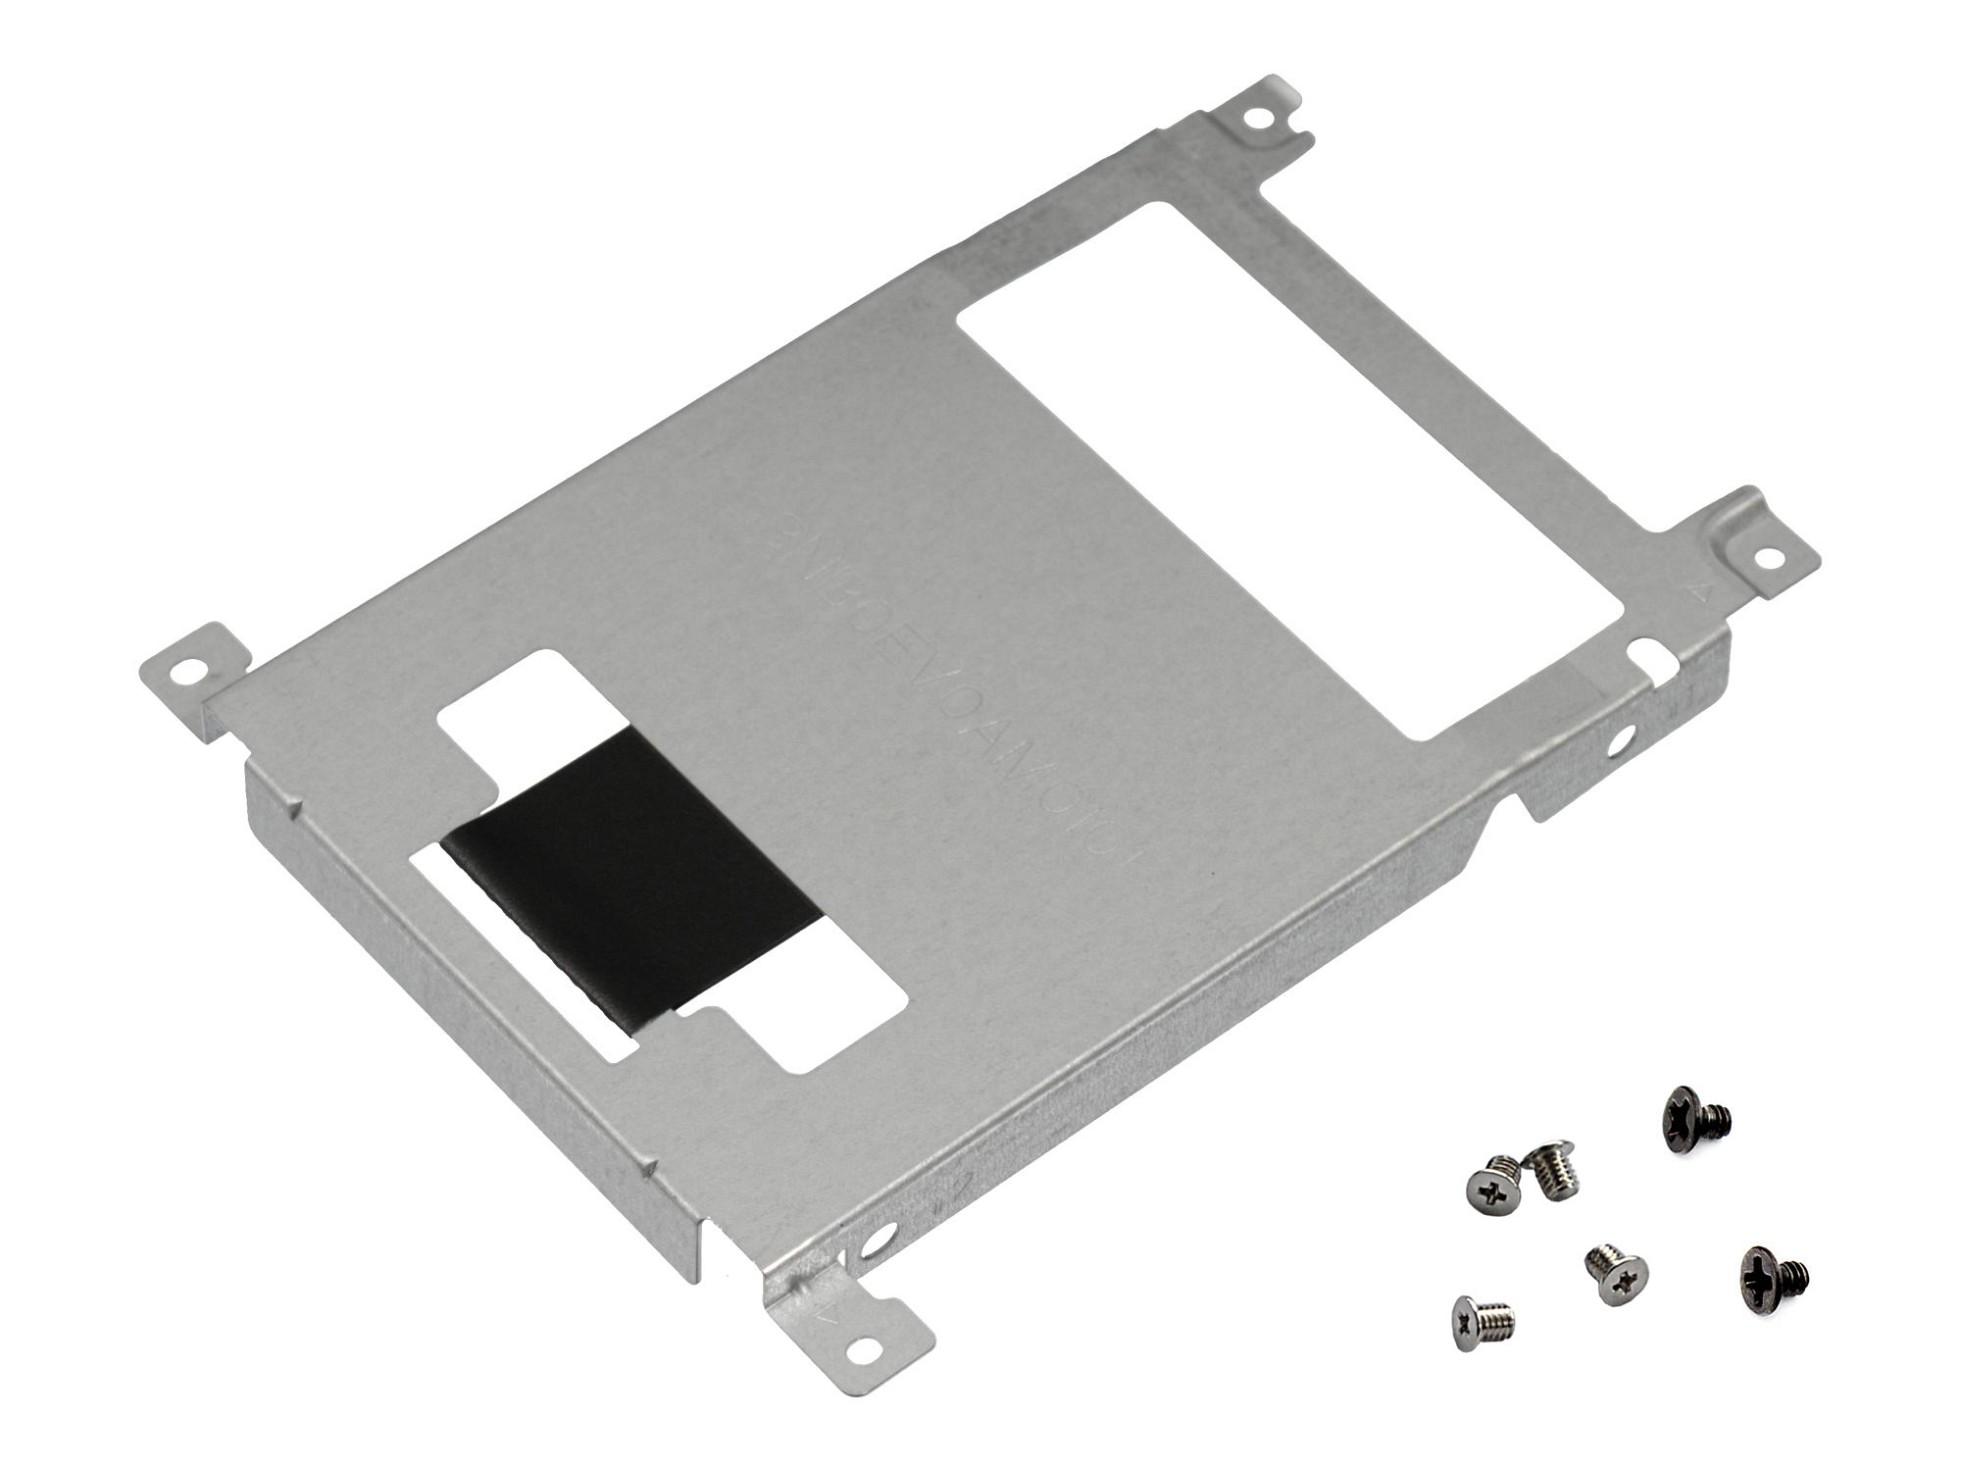 Festplatten-Einbaurahmen für den 1. Festplatten Schacht inkl. Schrauben Original für Asus VivoBook 17 X705UQ